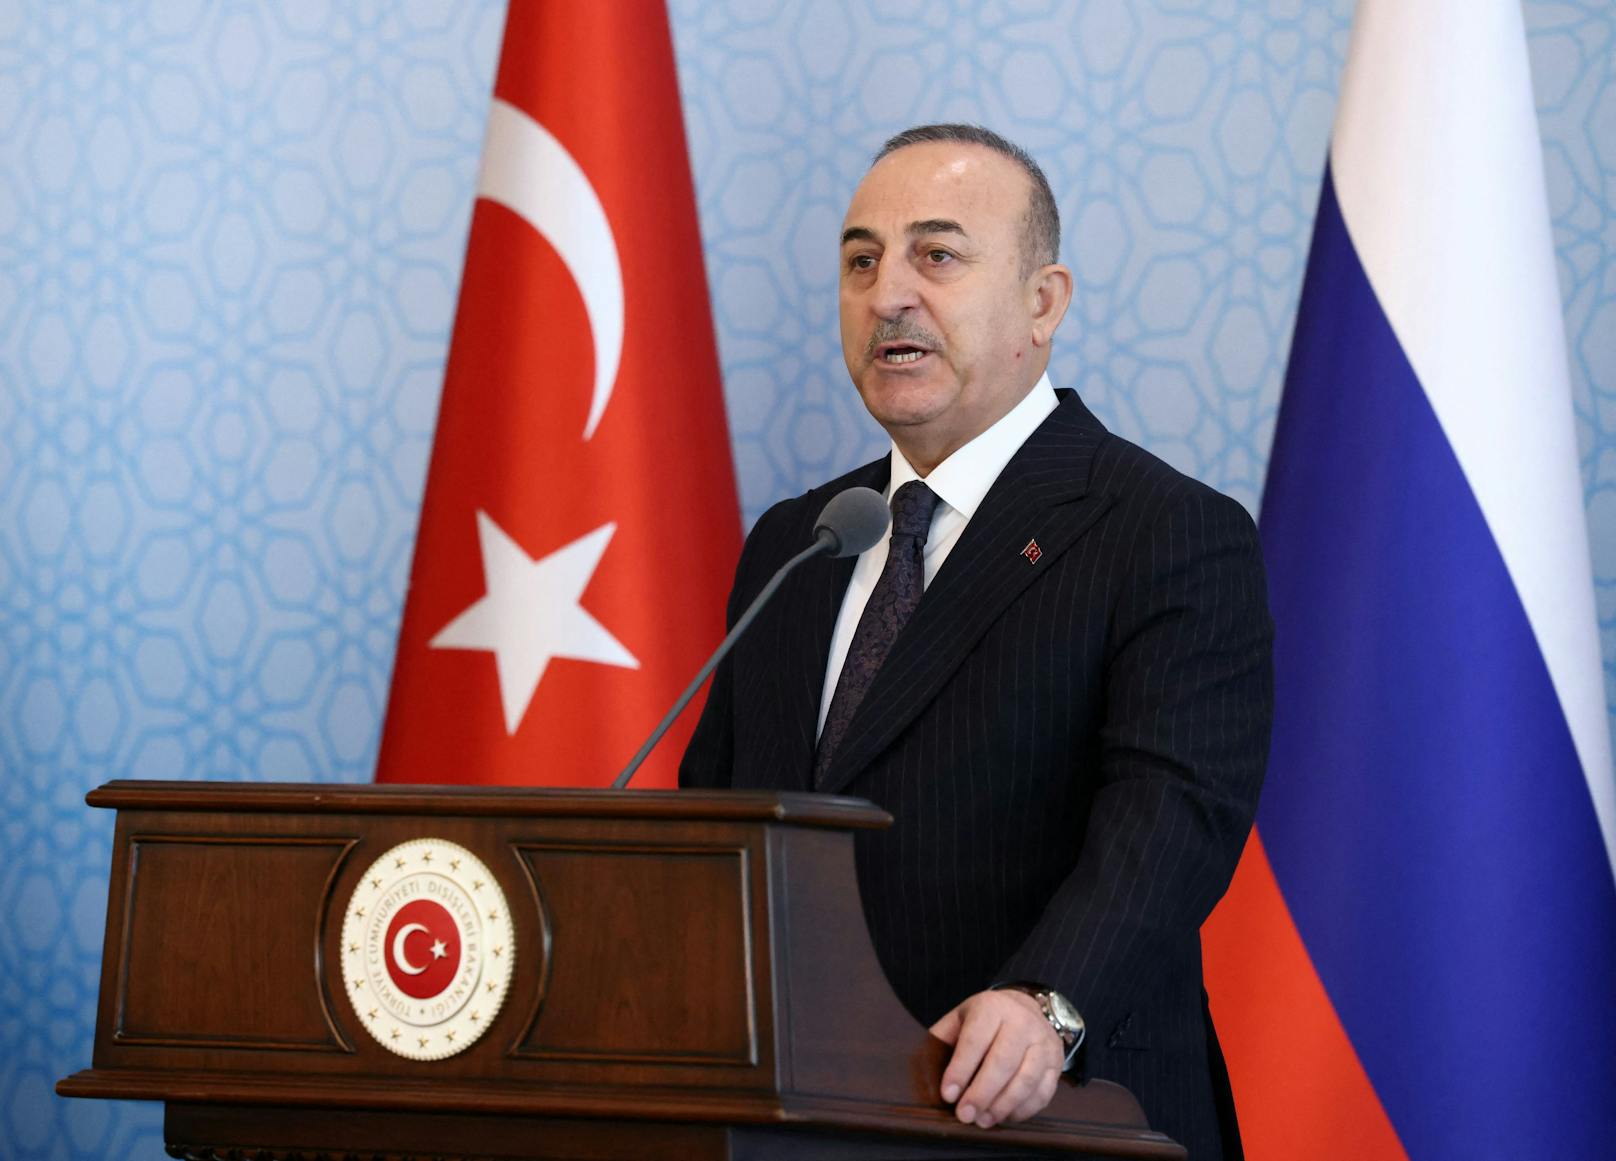 Mevlut Cavusoglu während der gemeinsamen Pressekonferenz.